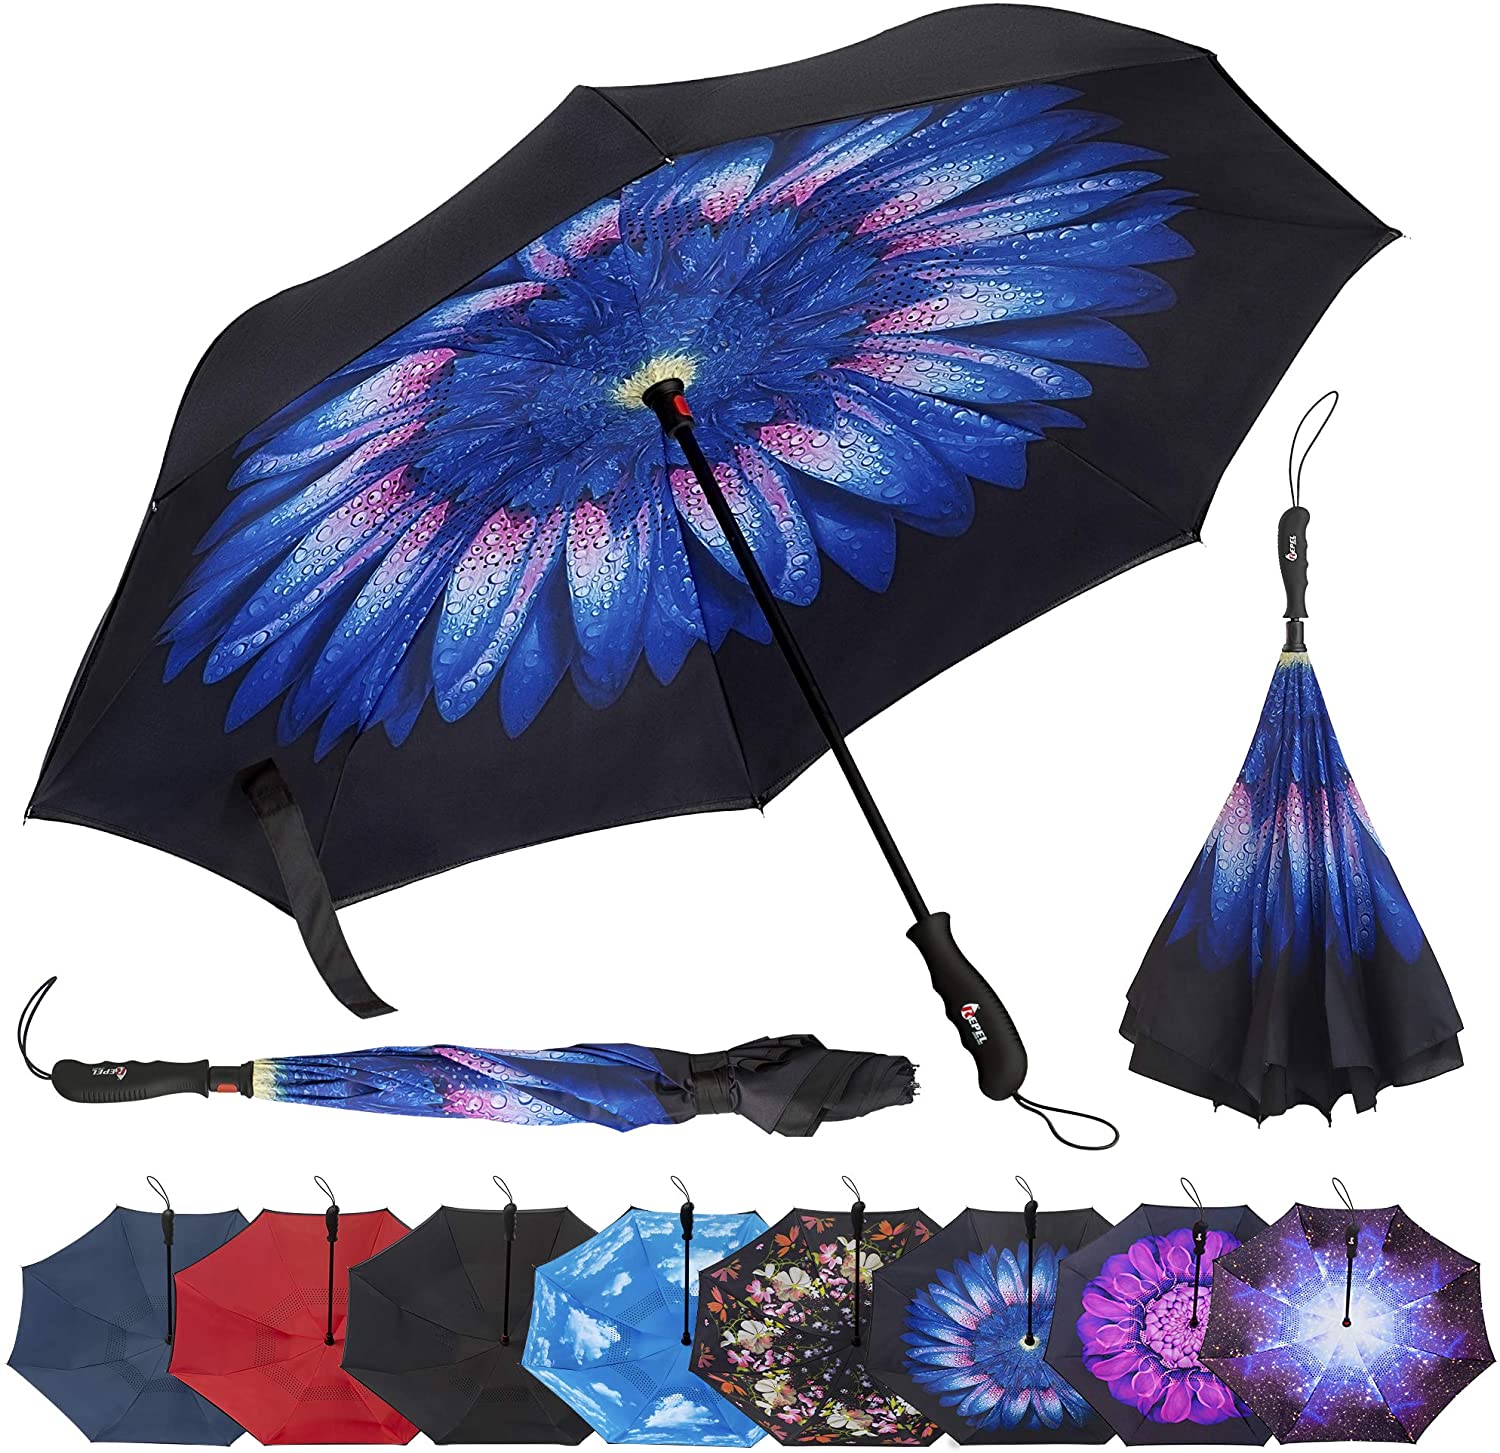 Repel Umbrella Reverse Folding Inverted Teflon Coated Umbrella